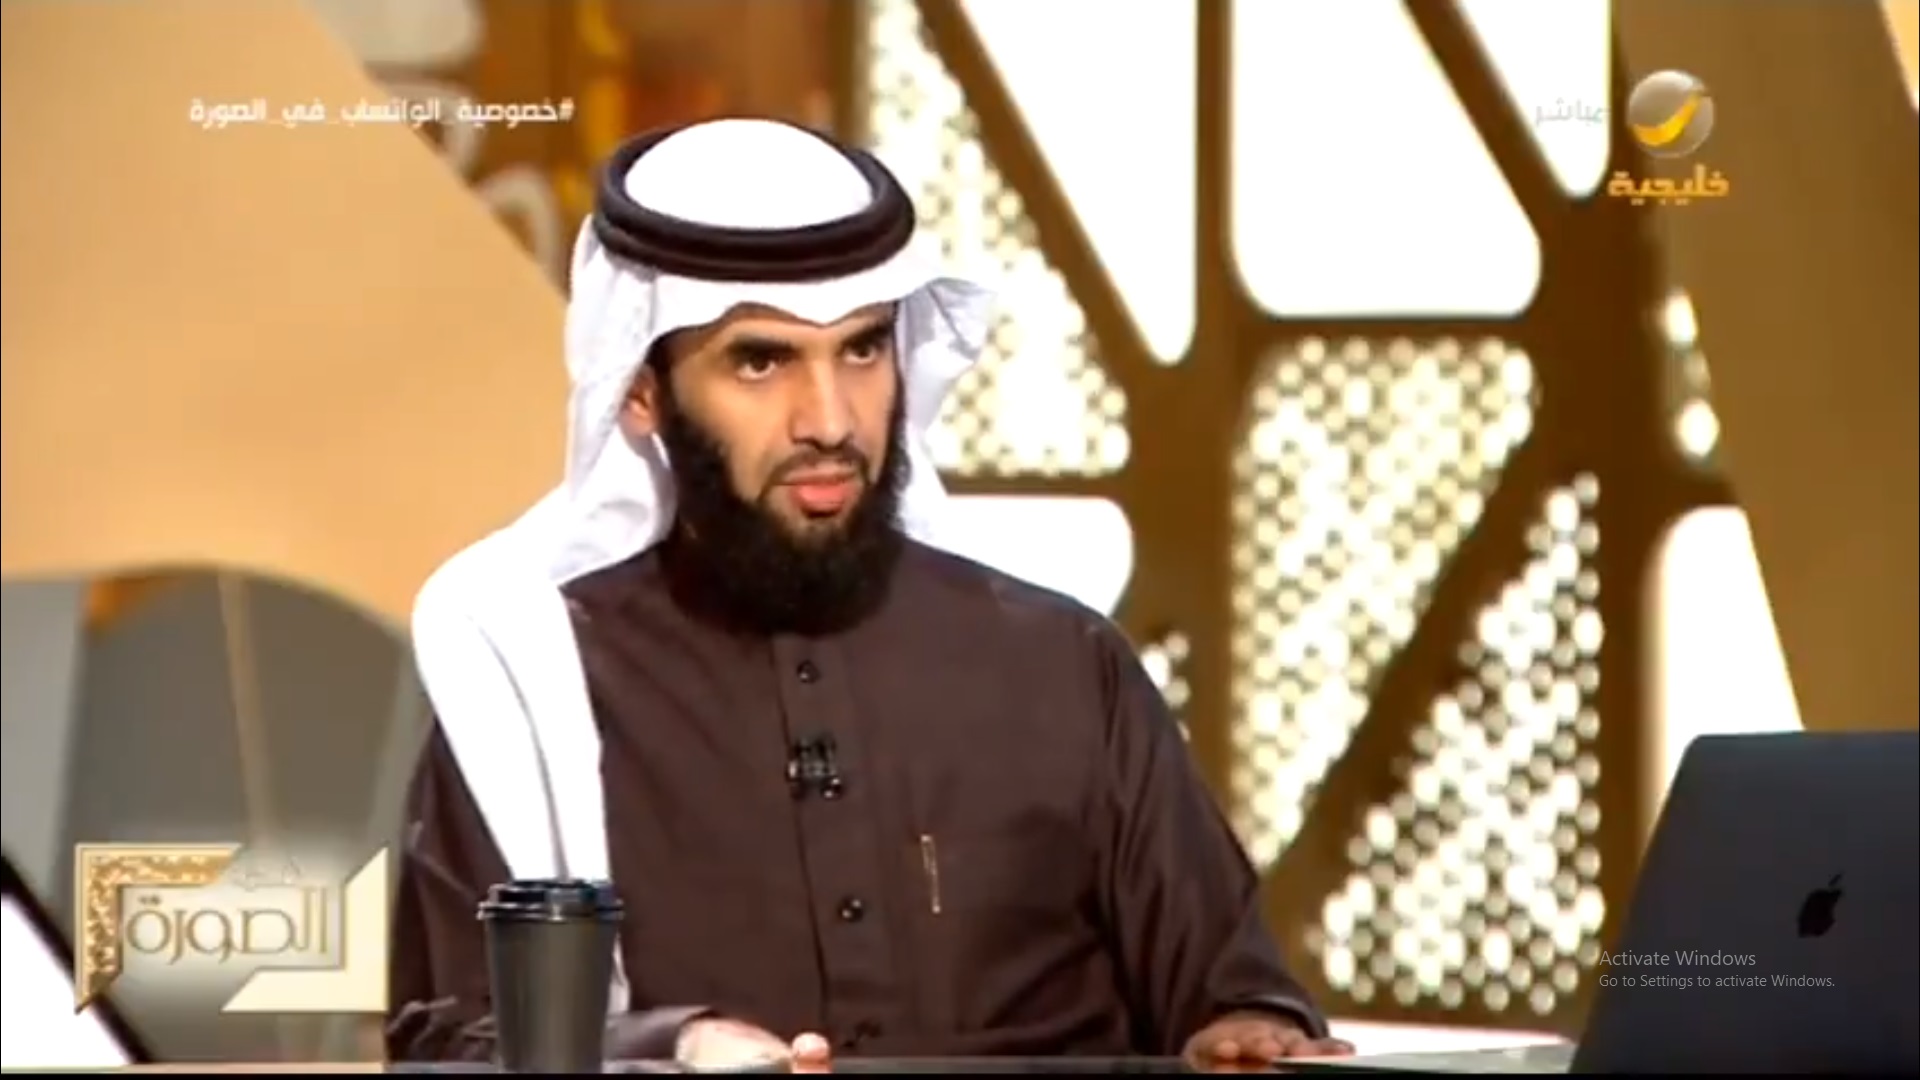 عبدالعزيز الحمادي: أي شيء يتم كتابته في تيك توك يتم نسخه تلقائيًّا